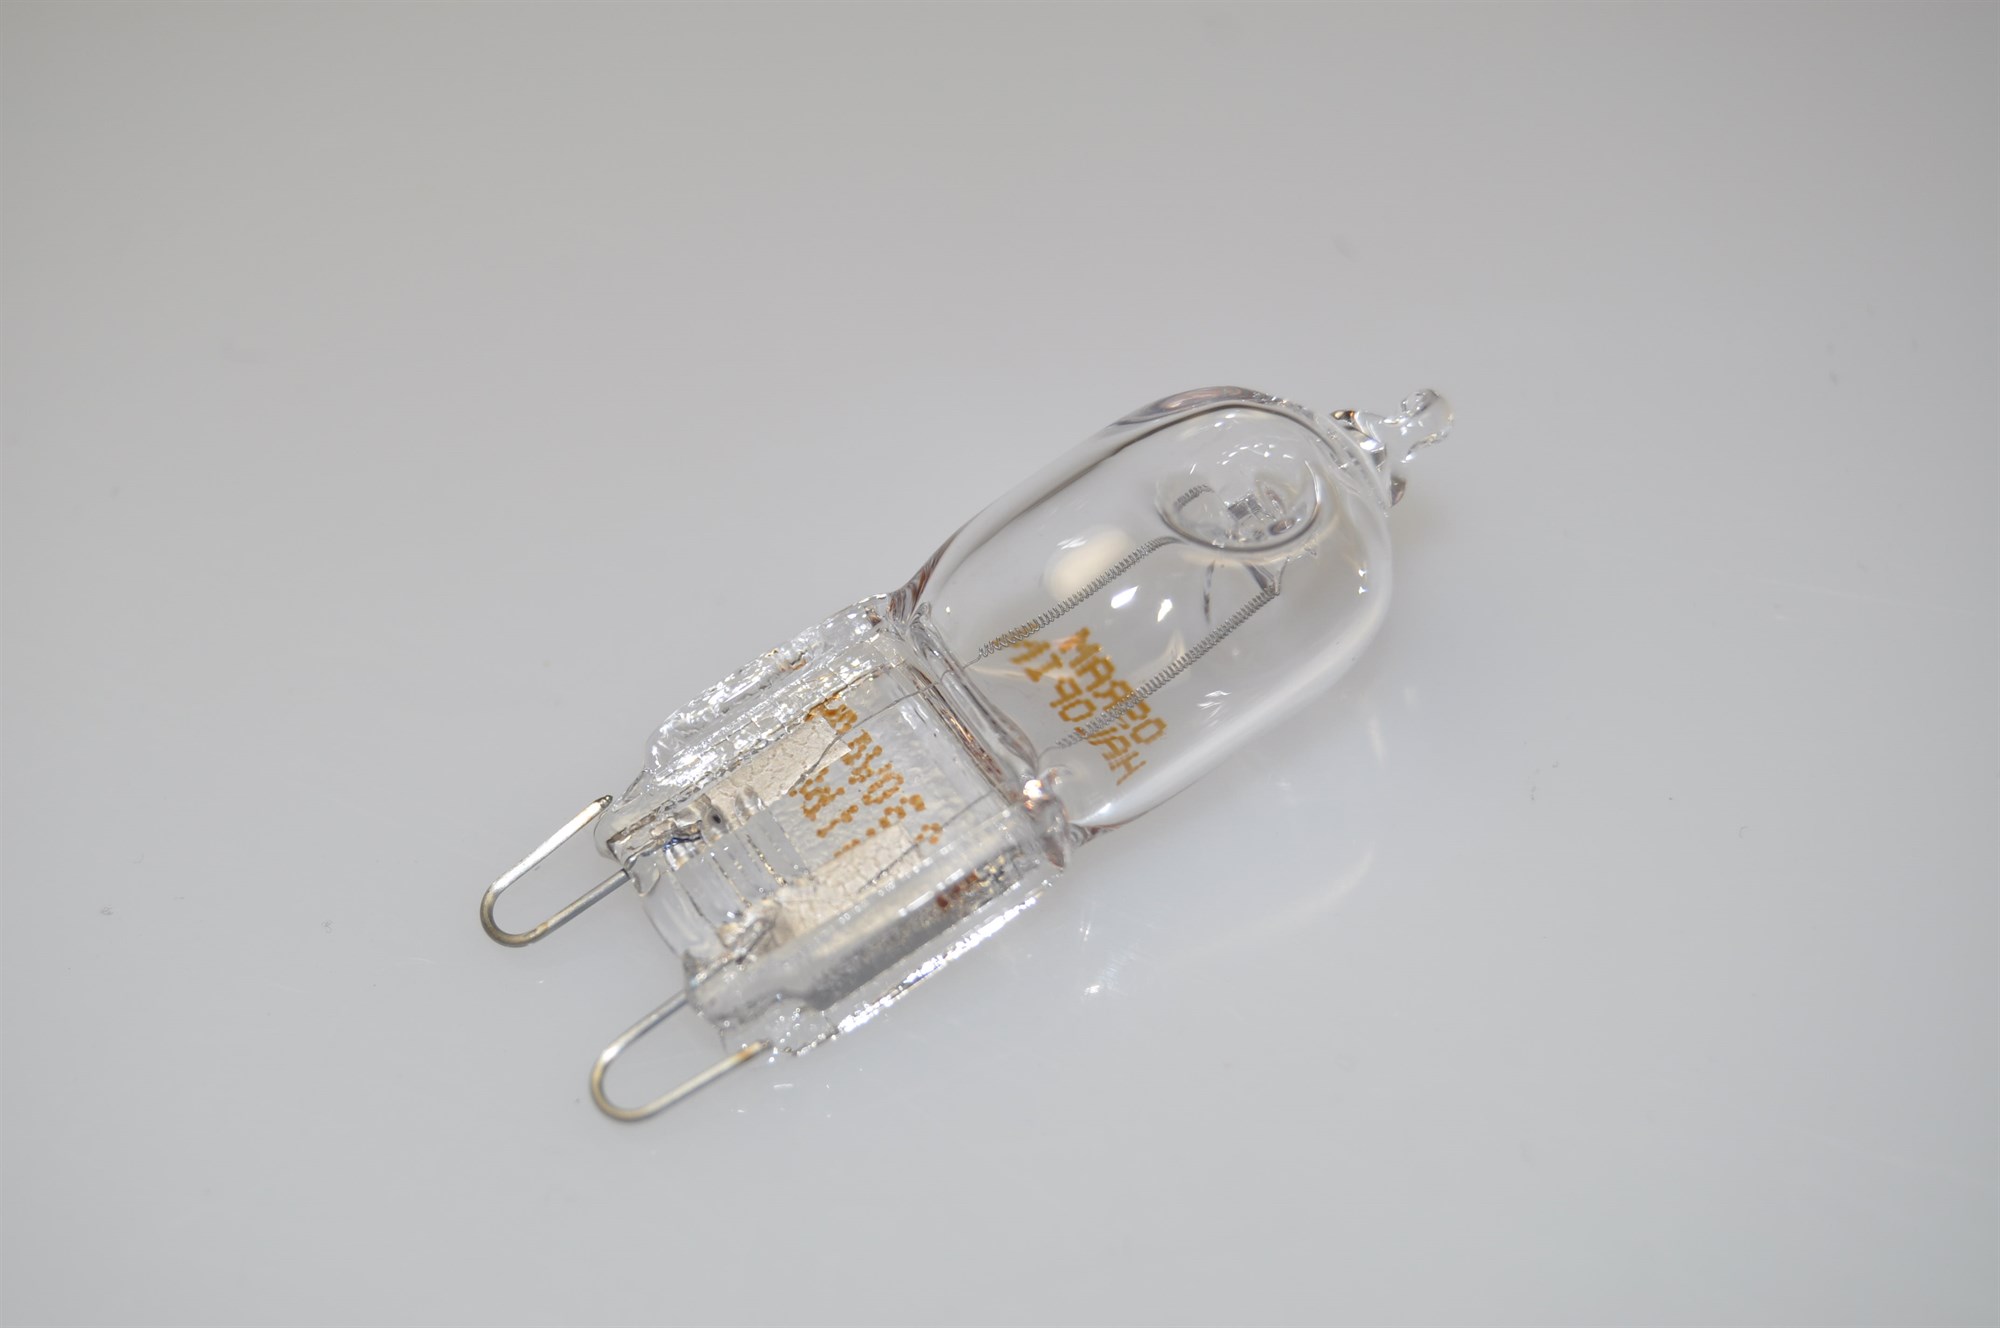 Original ZANUSSI Cuisinière Four Ampoule Lampe G9 40 W Genuine par Power 40 wattslight UK